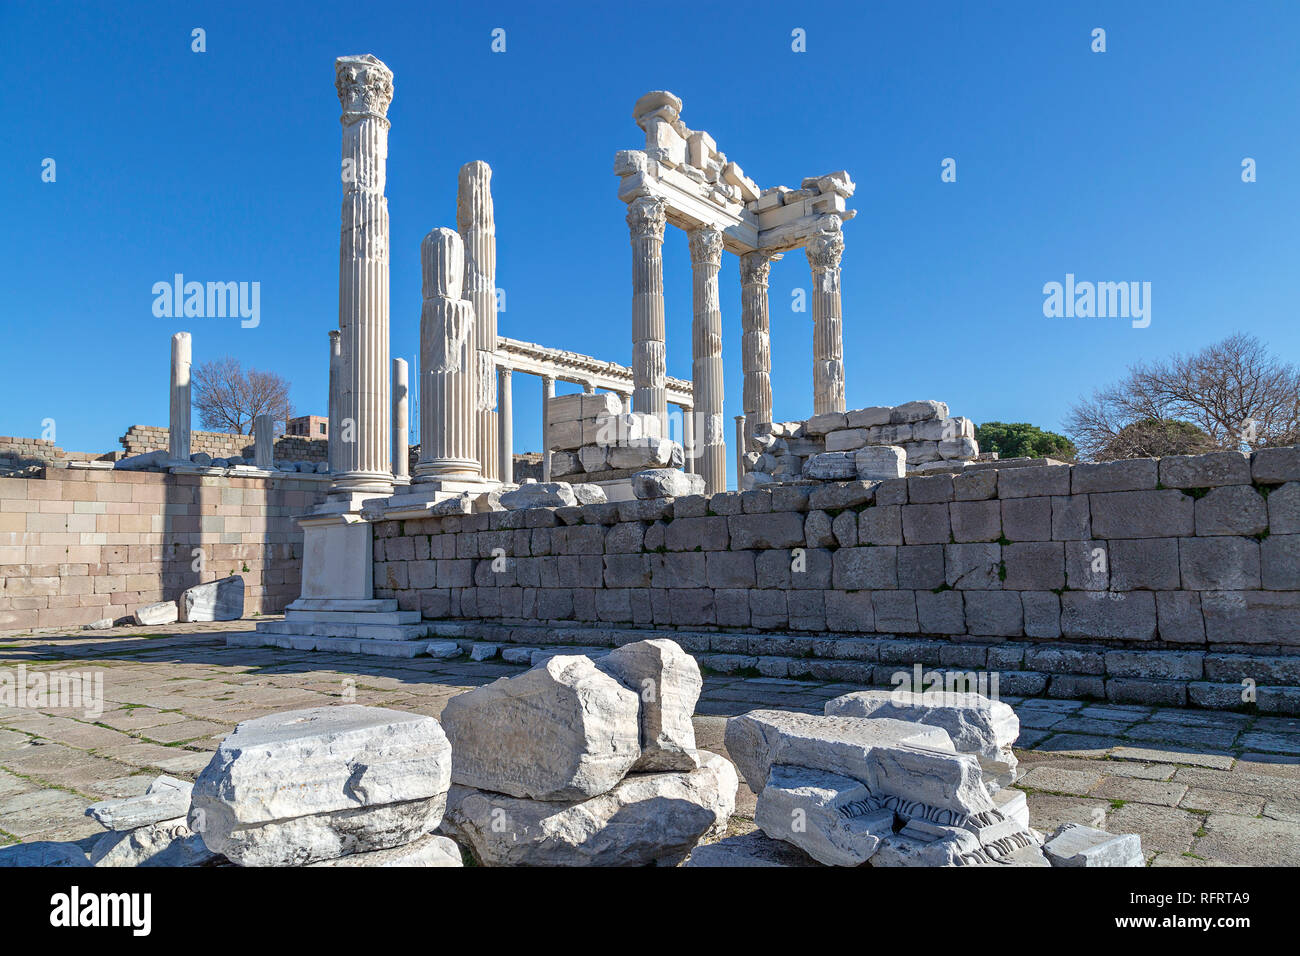 Reste du Temple romain de Trajan dans les ruines de la ville antique de Pergame Pergame, connu aussi sous le nom de la Turquie. Banque D'Images